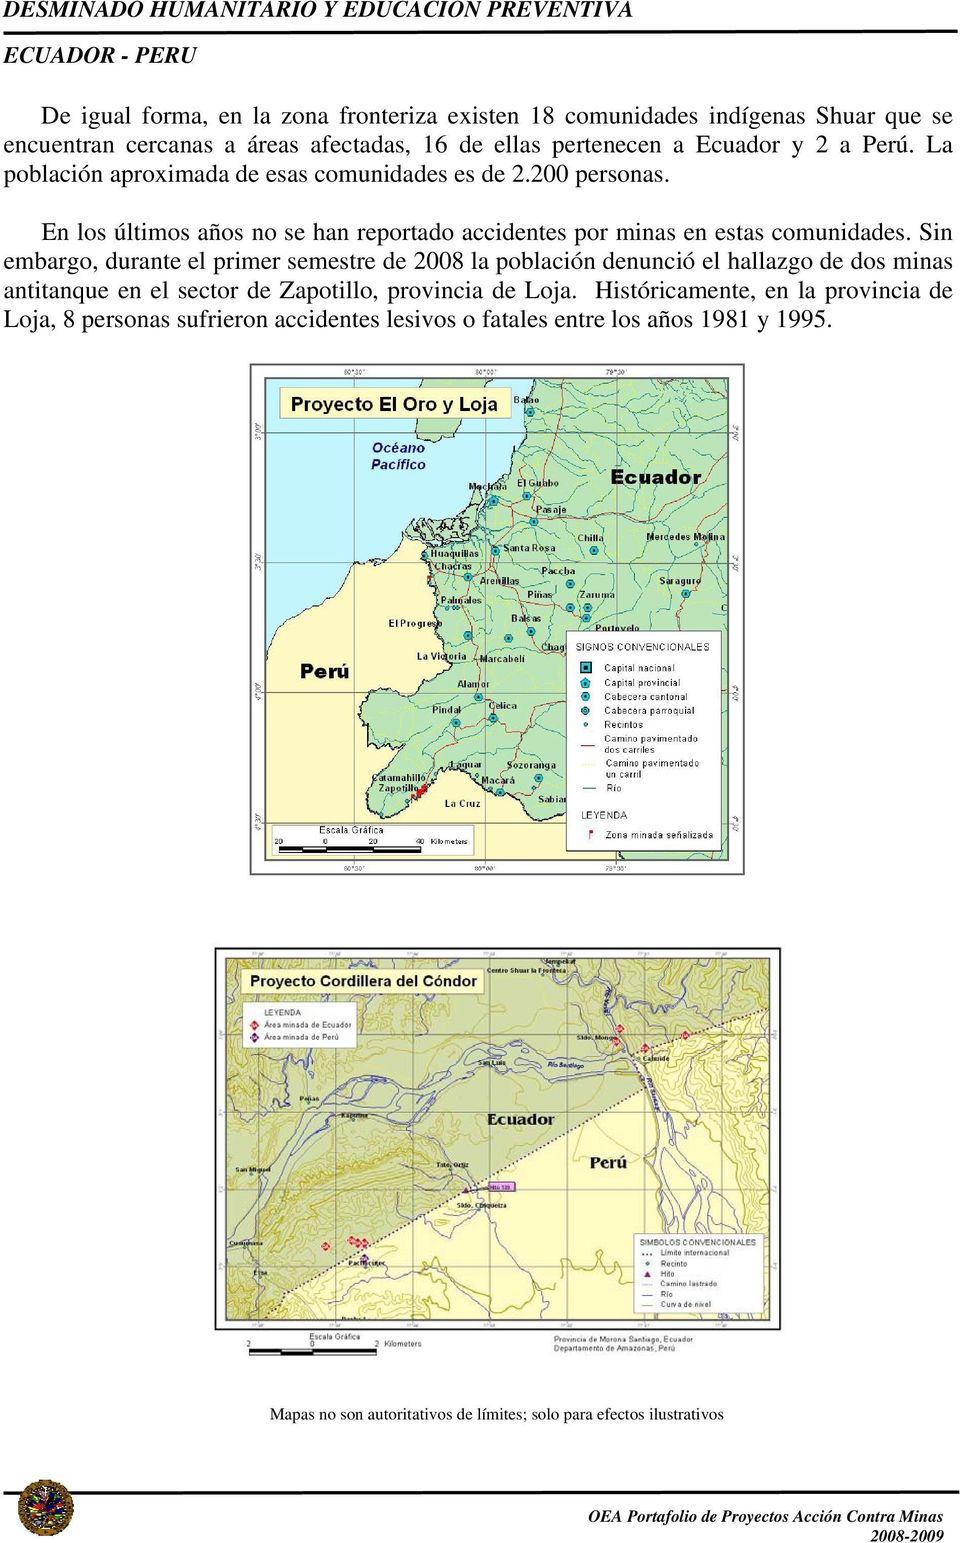 Sin embargo, durante el primer semestre de 2008 la población denunció el hallazgo de dos minas antitanque en el sector de Zapotillo, provincia de Loja.